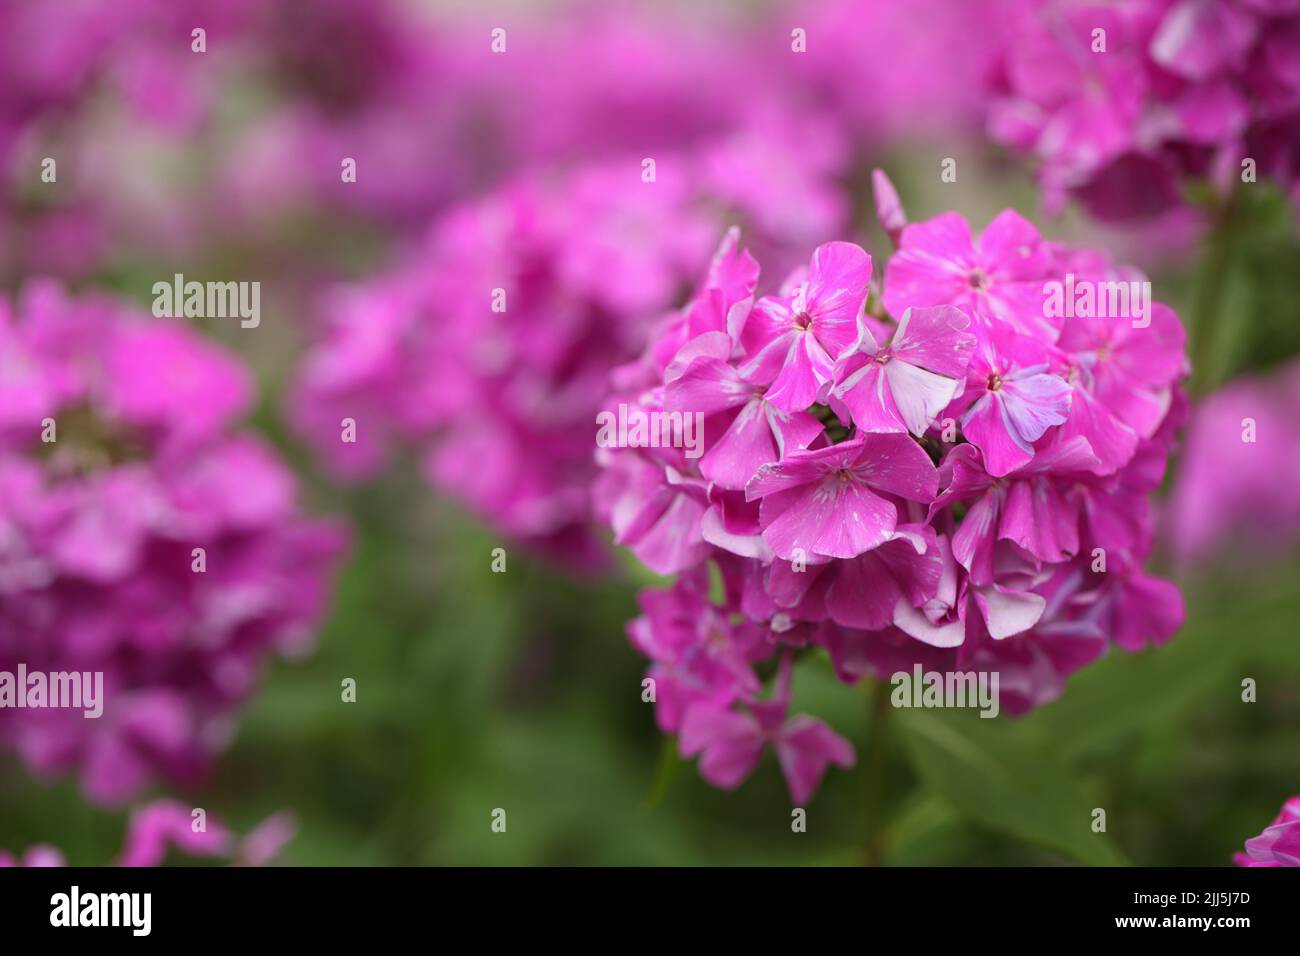 Purple phlox flowers in a garden Stock Photo